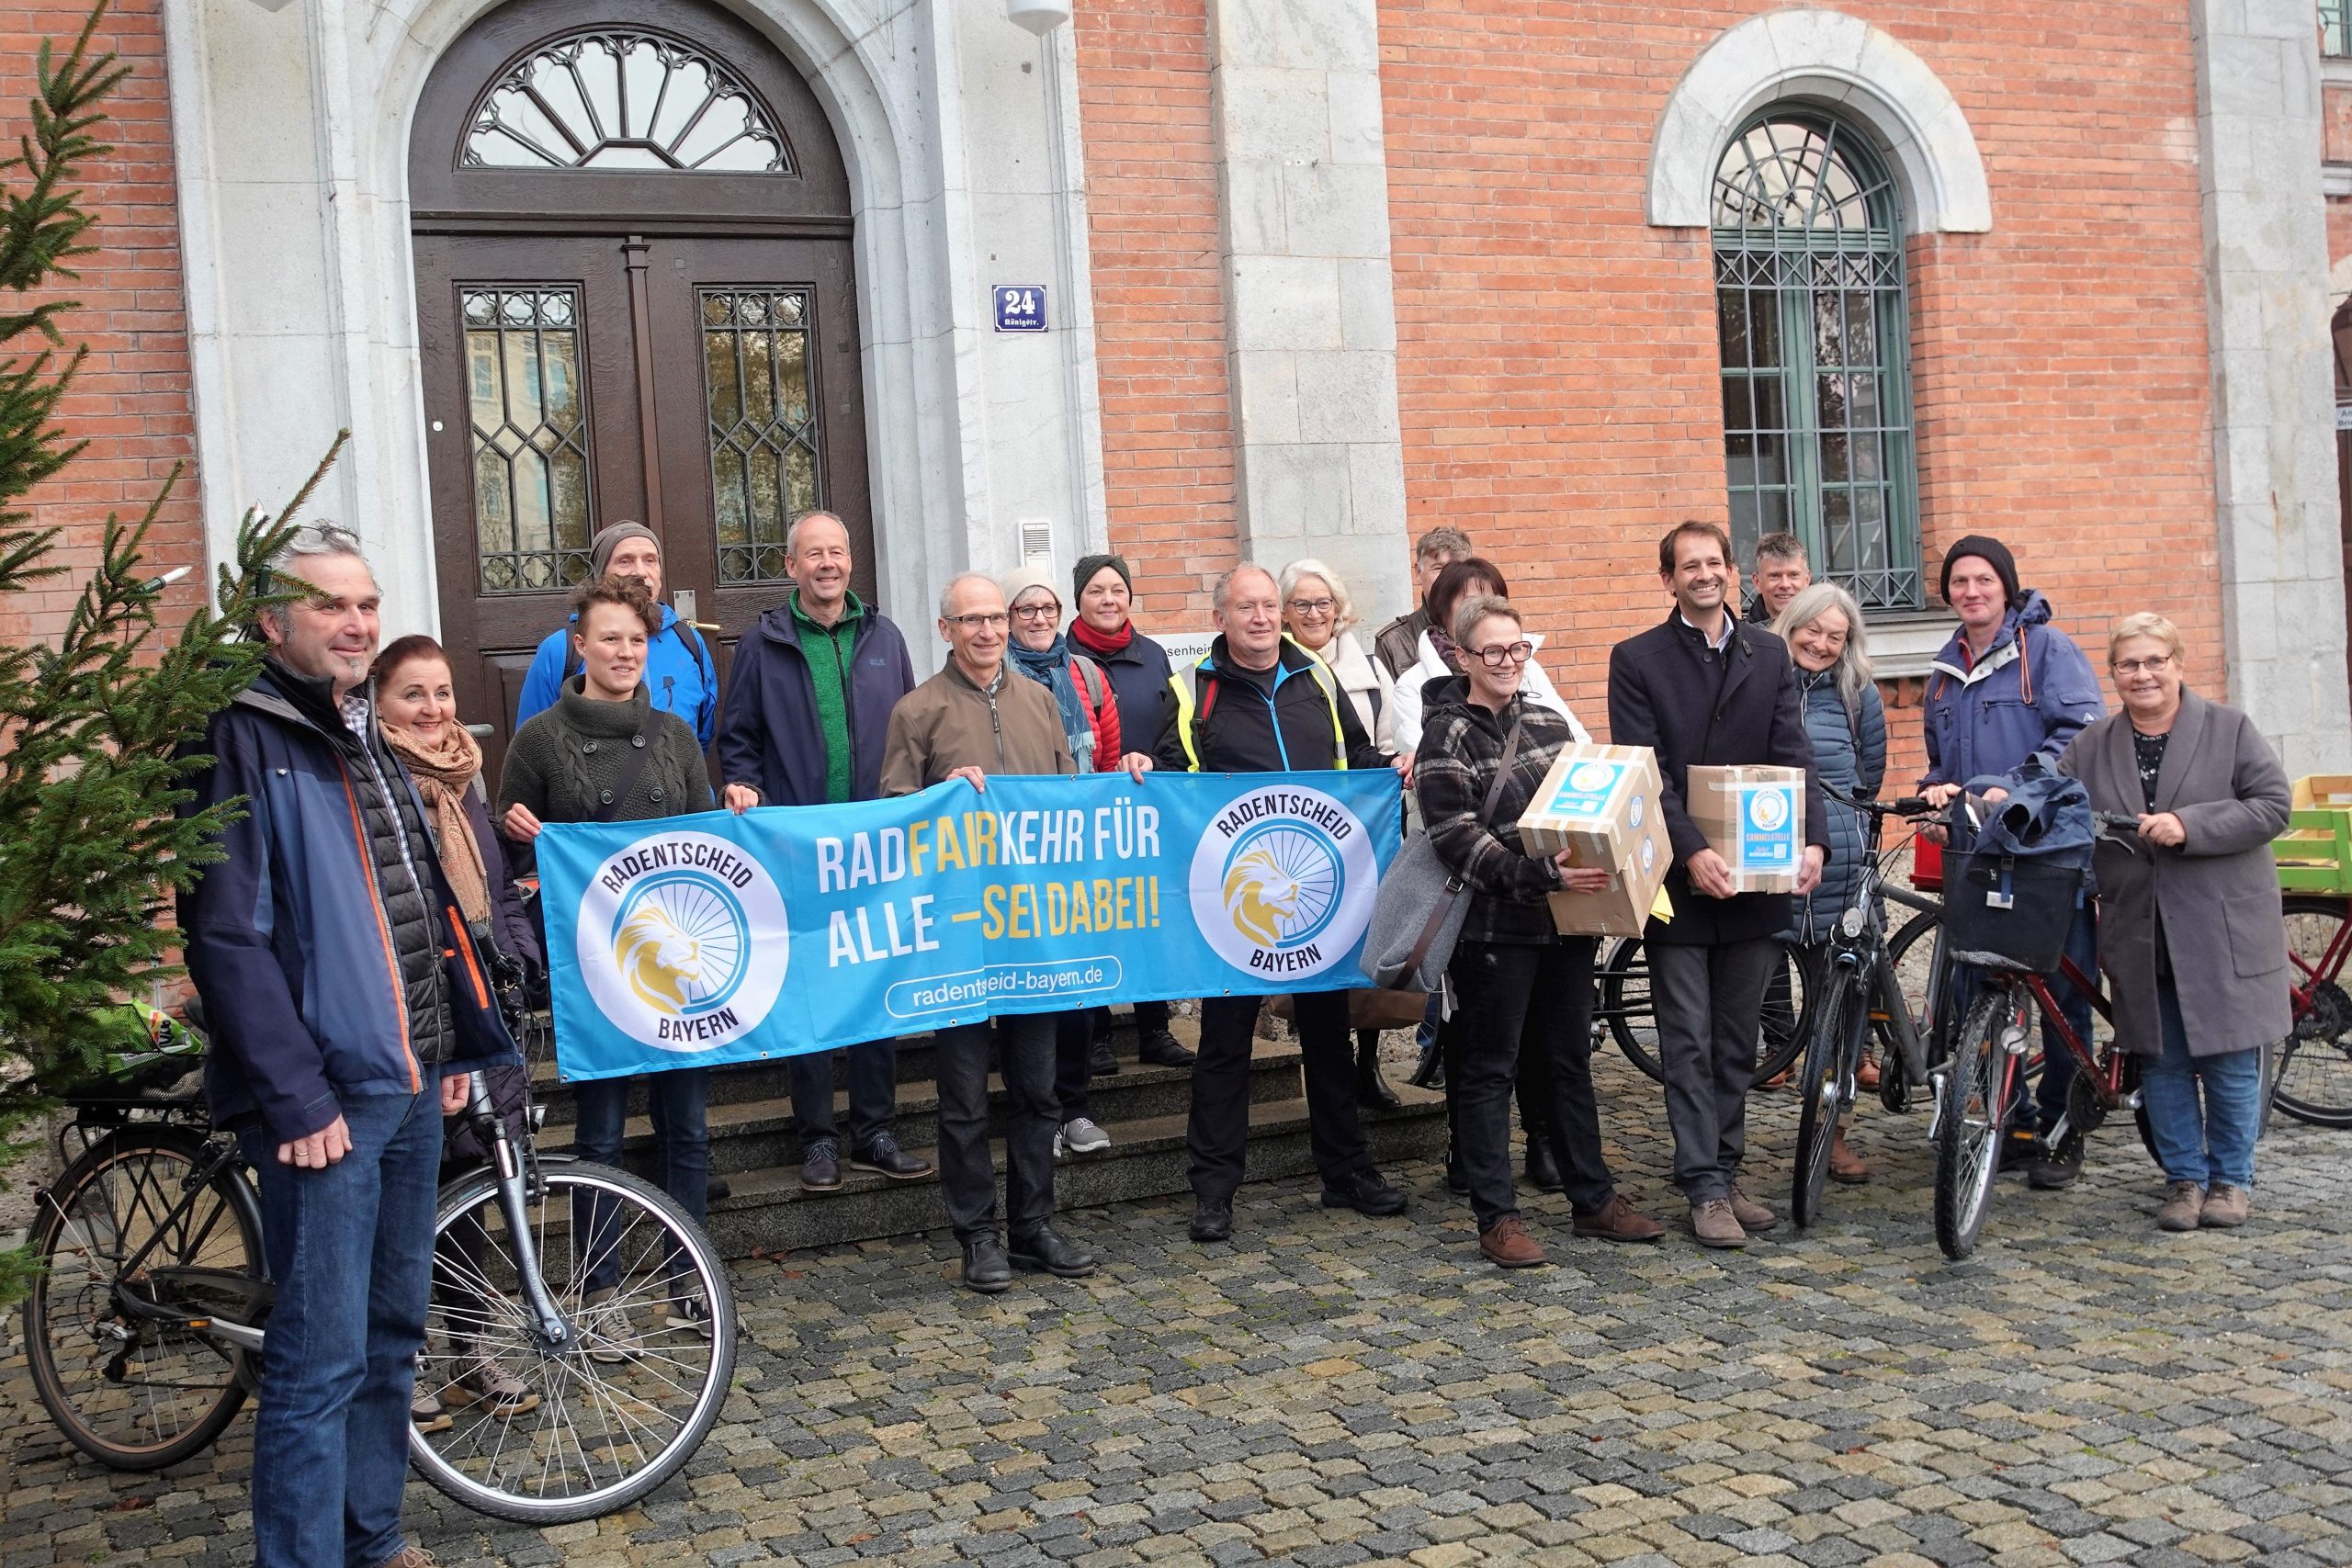 Menschen mit Plakat, Unterschriftenpaketen und einem Fahrrad vor dem Rathaus Rosenheim